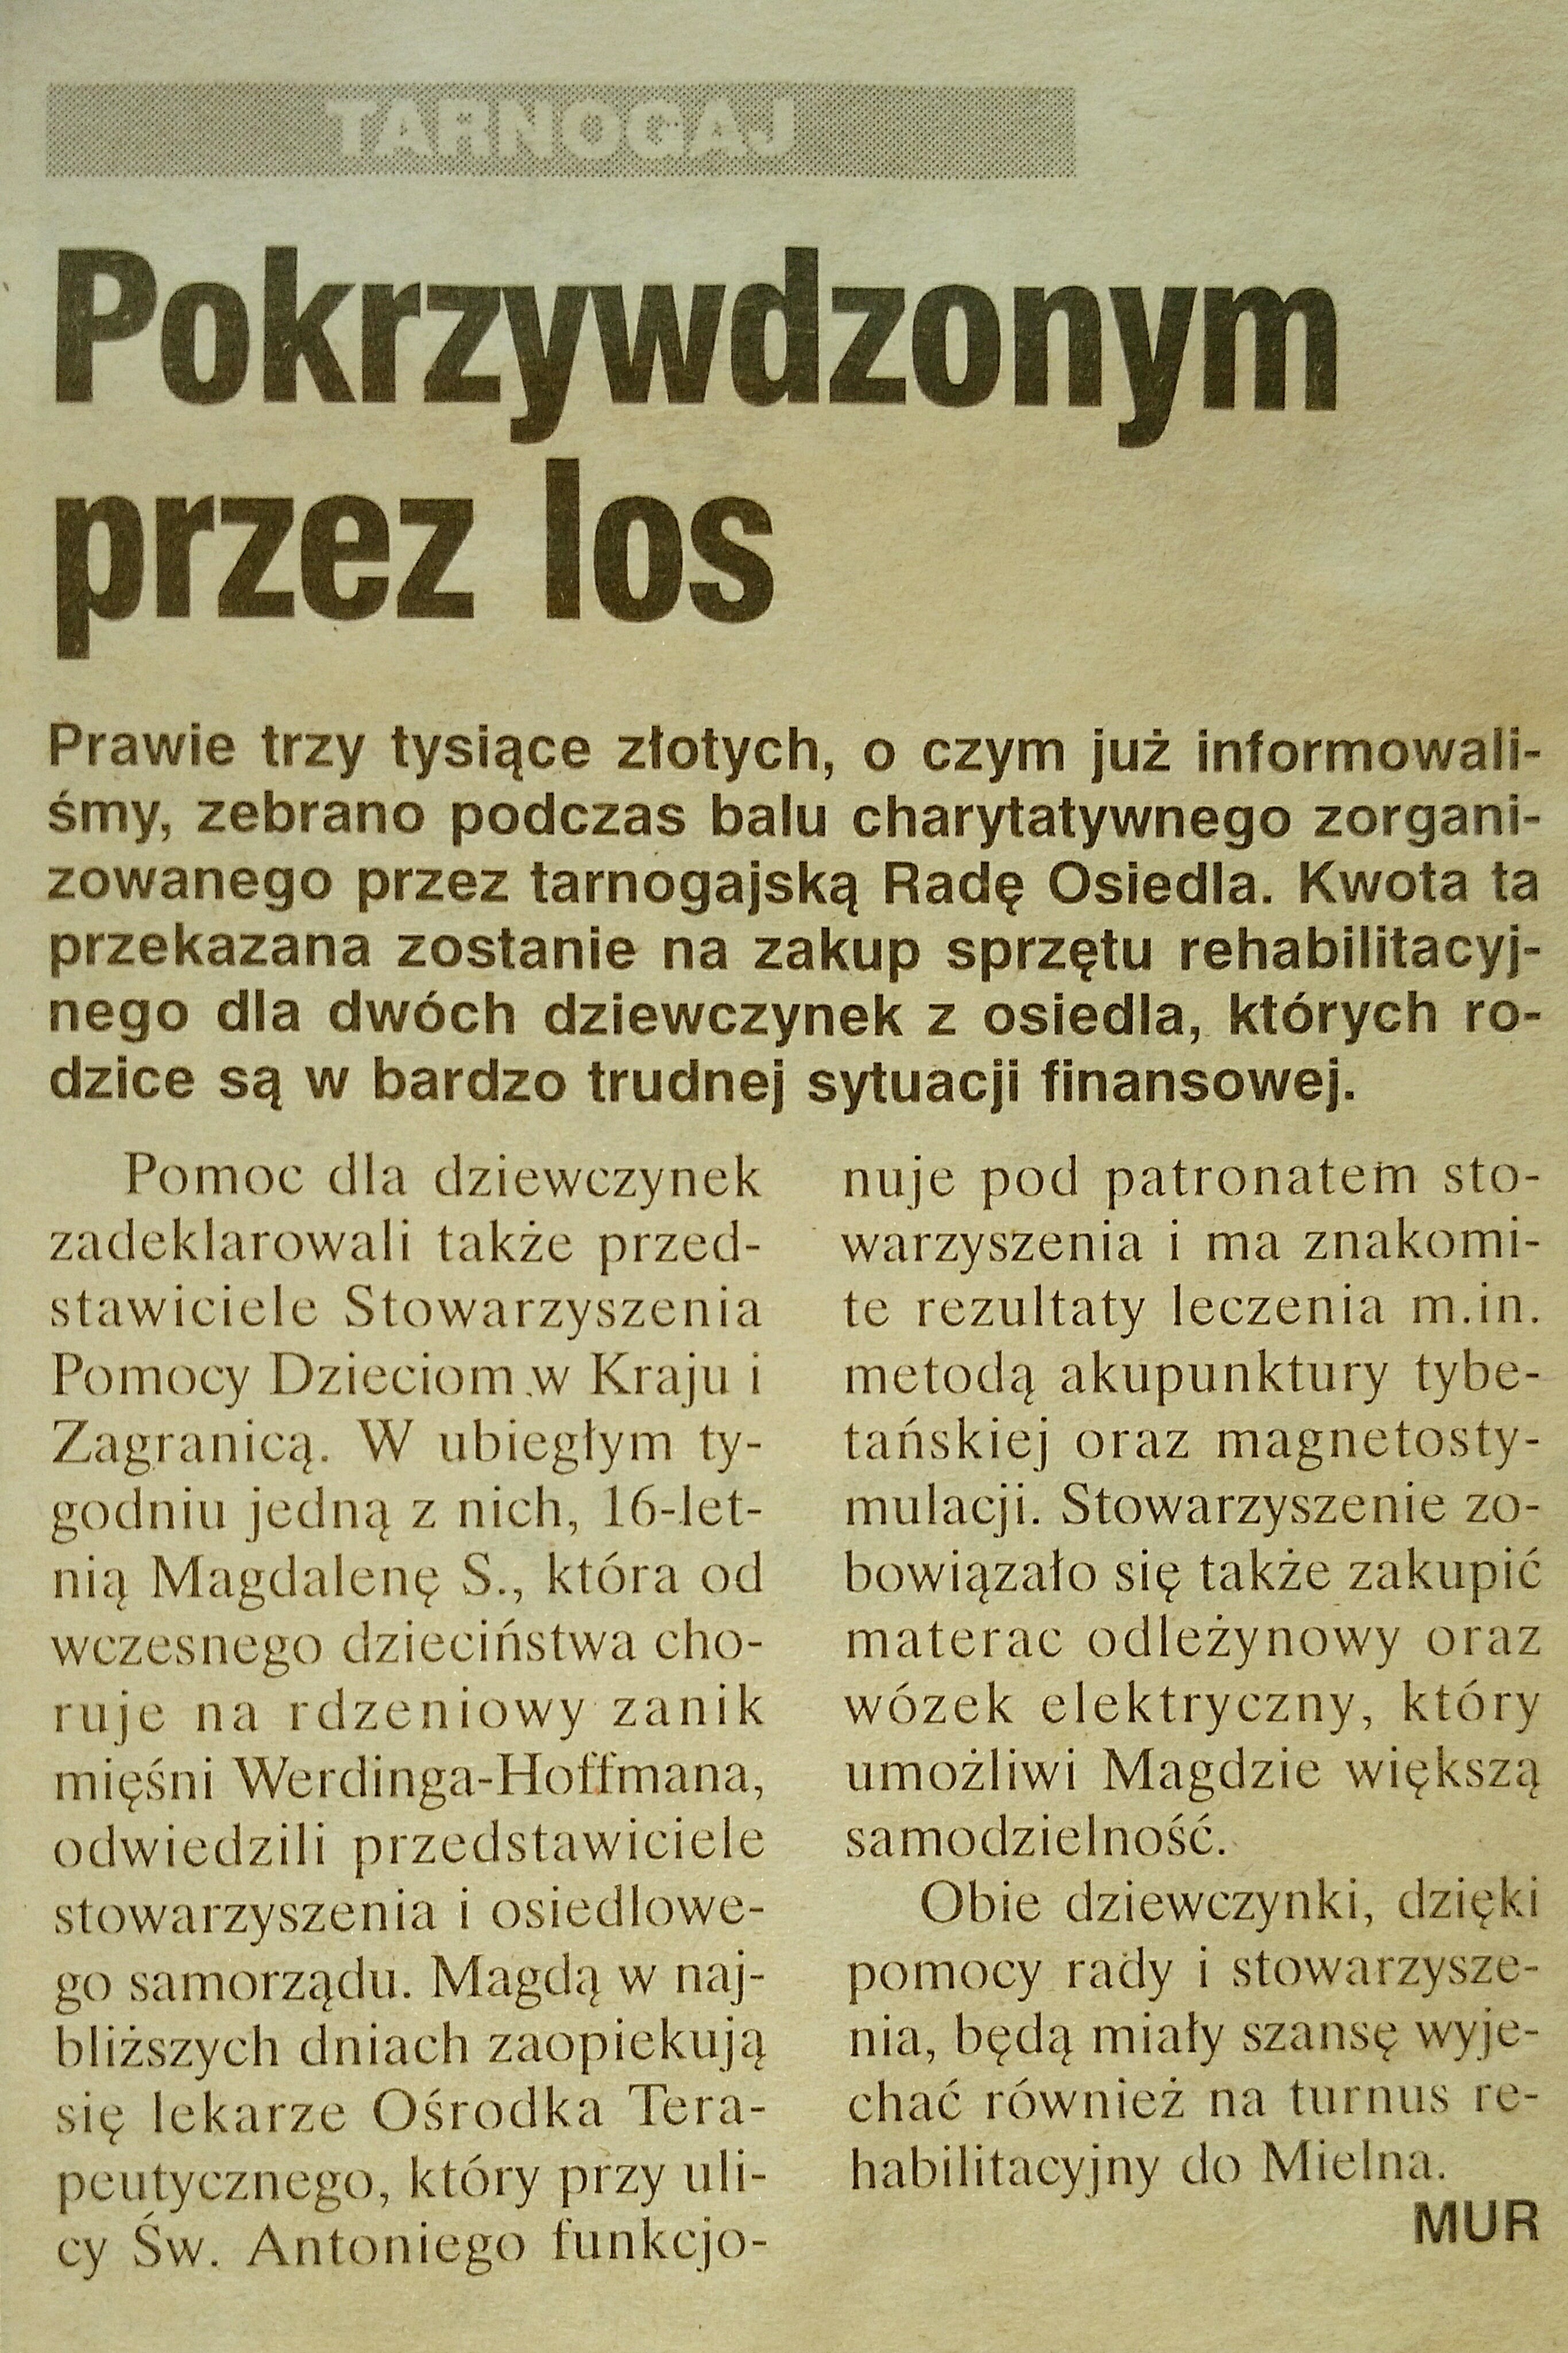 4 20 Lutego 2001 Wieczór Wrocławia